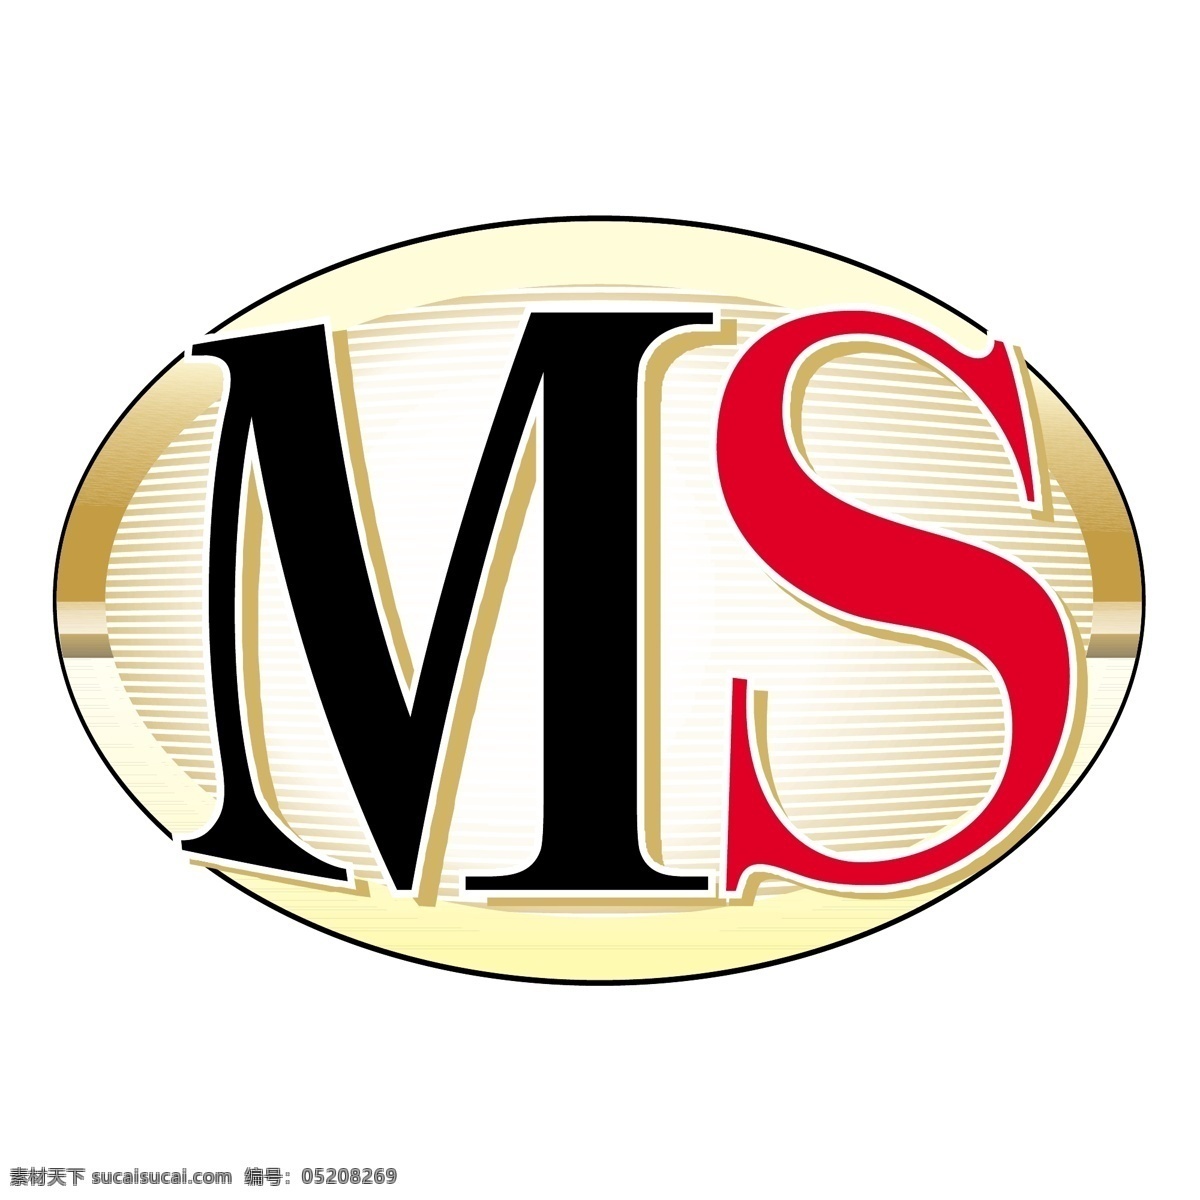 6级 logo logo矢量 女士 矢量标志下载 ms dos trebuchet 标志 dos的标志 在ms office 矢量 矢量ms ms国际标志 t 超音速 轰炸机 ms设计 矢量图 建筑家居